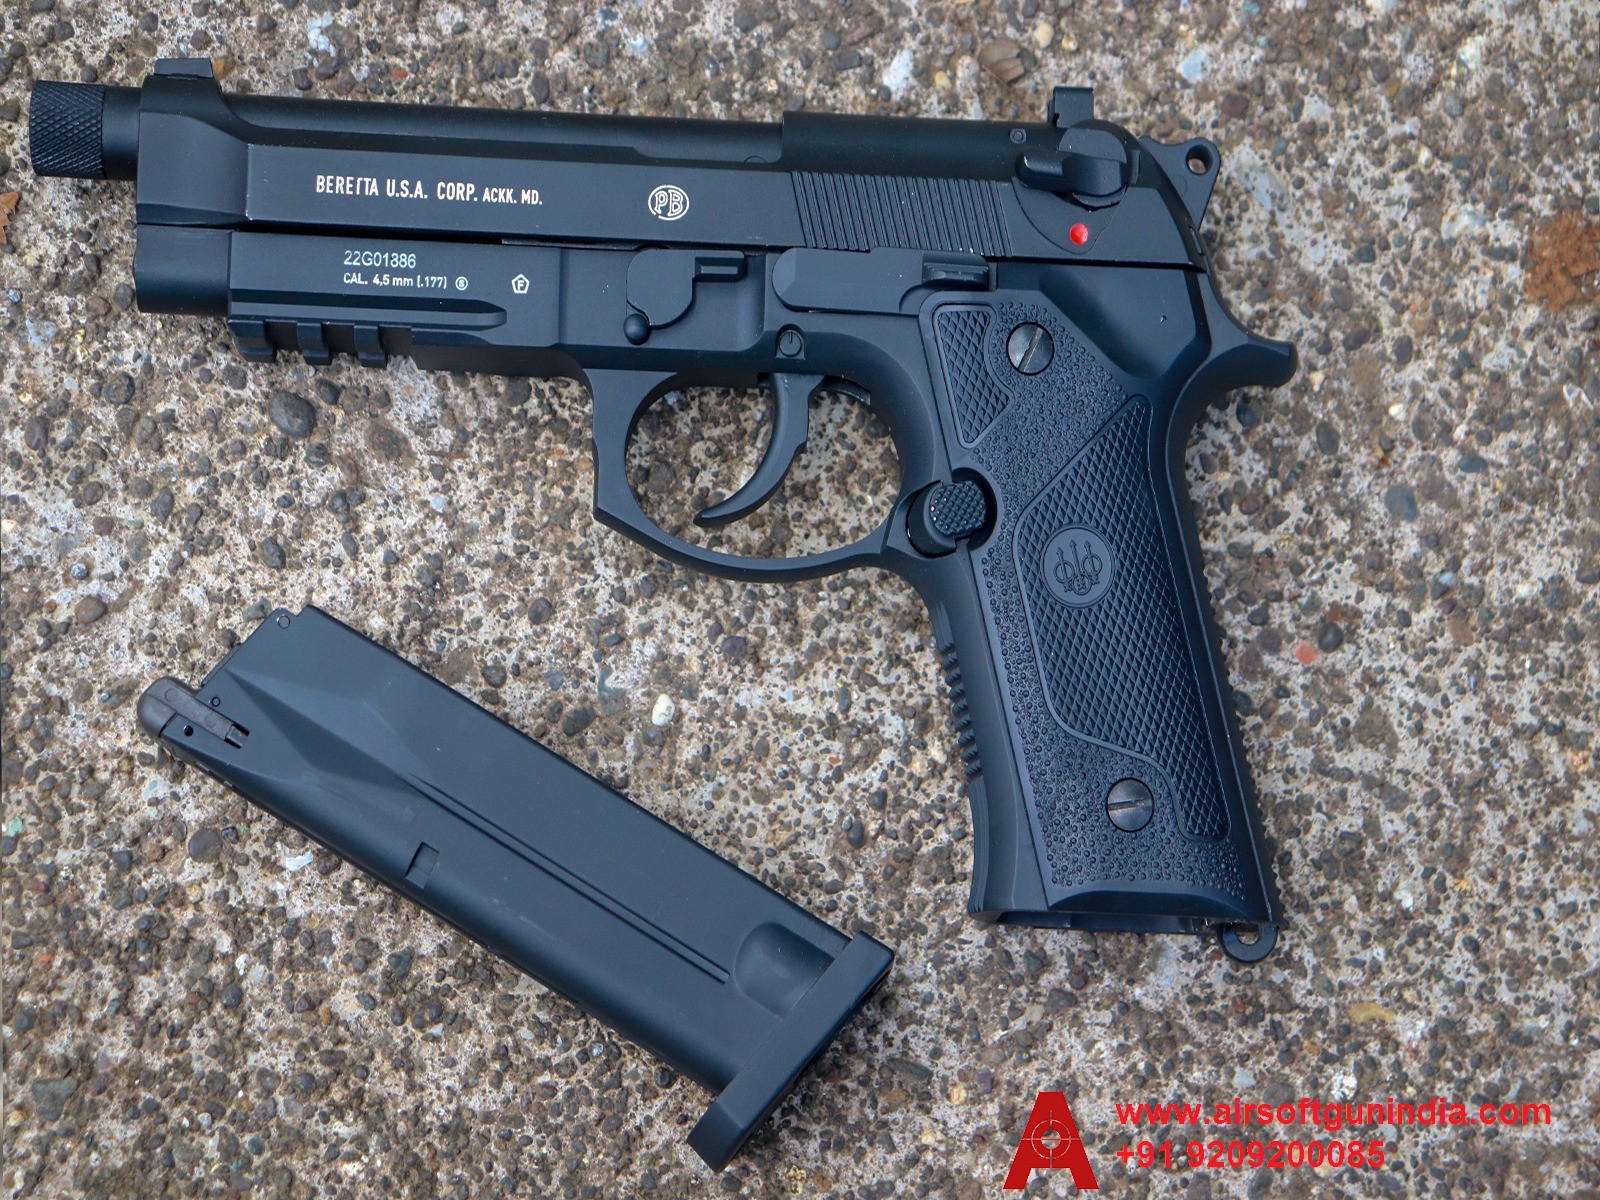 Airgun pistolet Beretta M9 A3 CO2 Full métal Blowback Billes acier 4.5 Inox